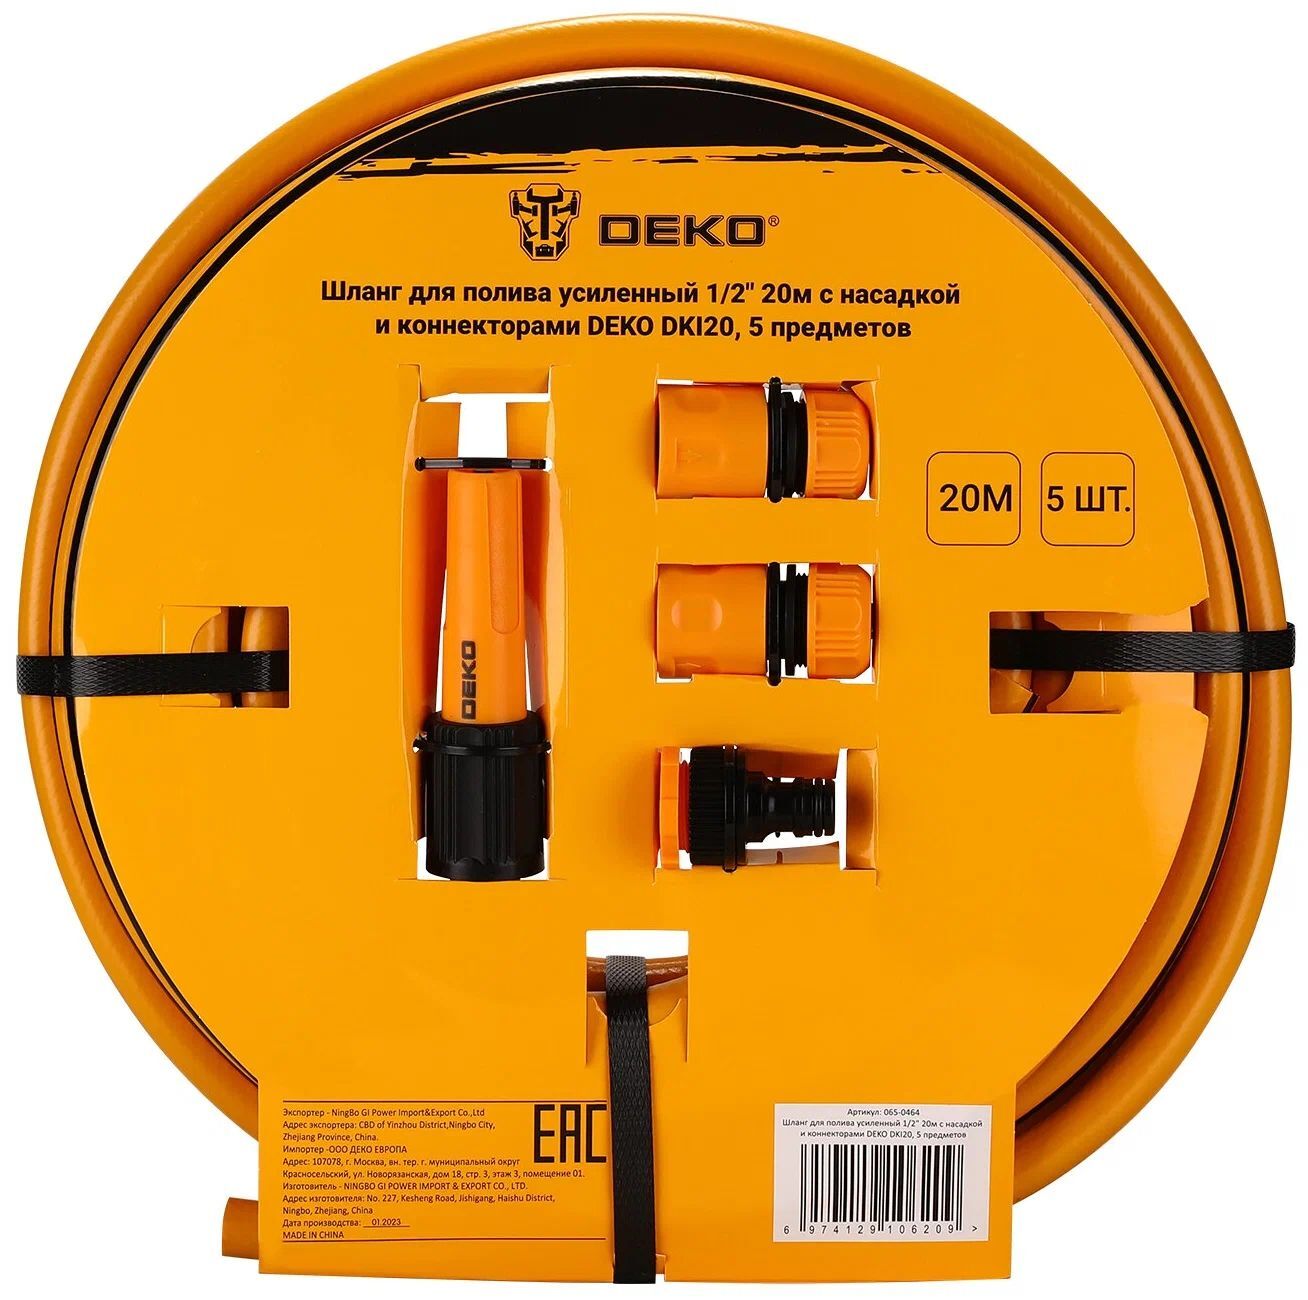 Шланг для полива усиленный 1/2" 20м с насадкой и коннекторами DEKO DKI20, 5 предметов Deko